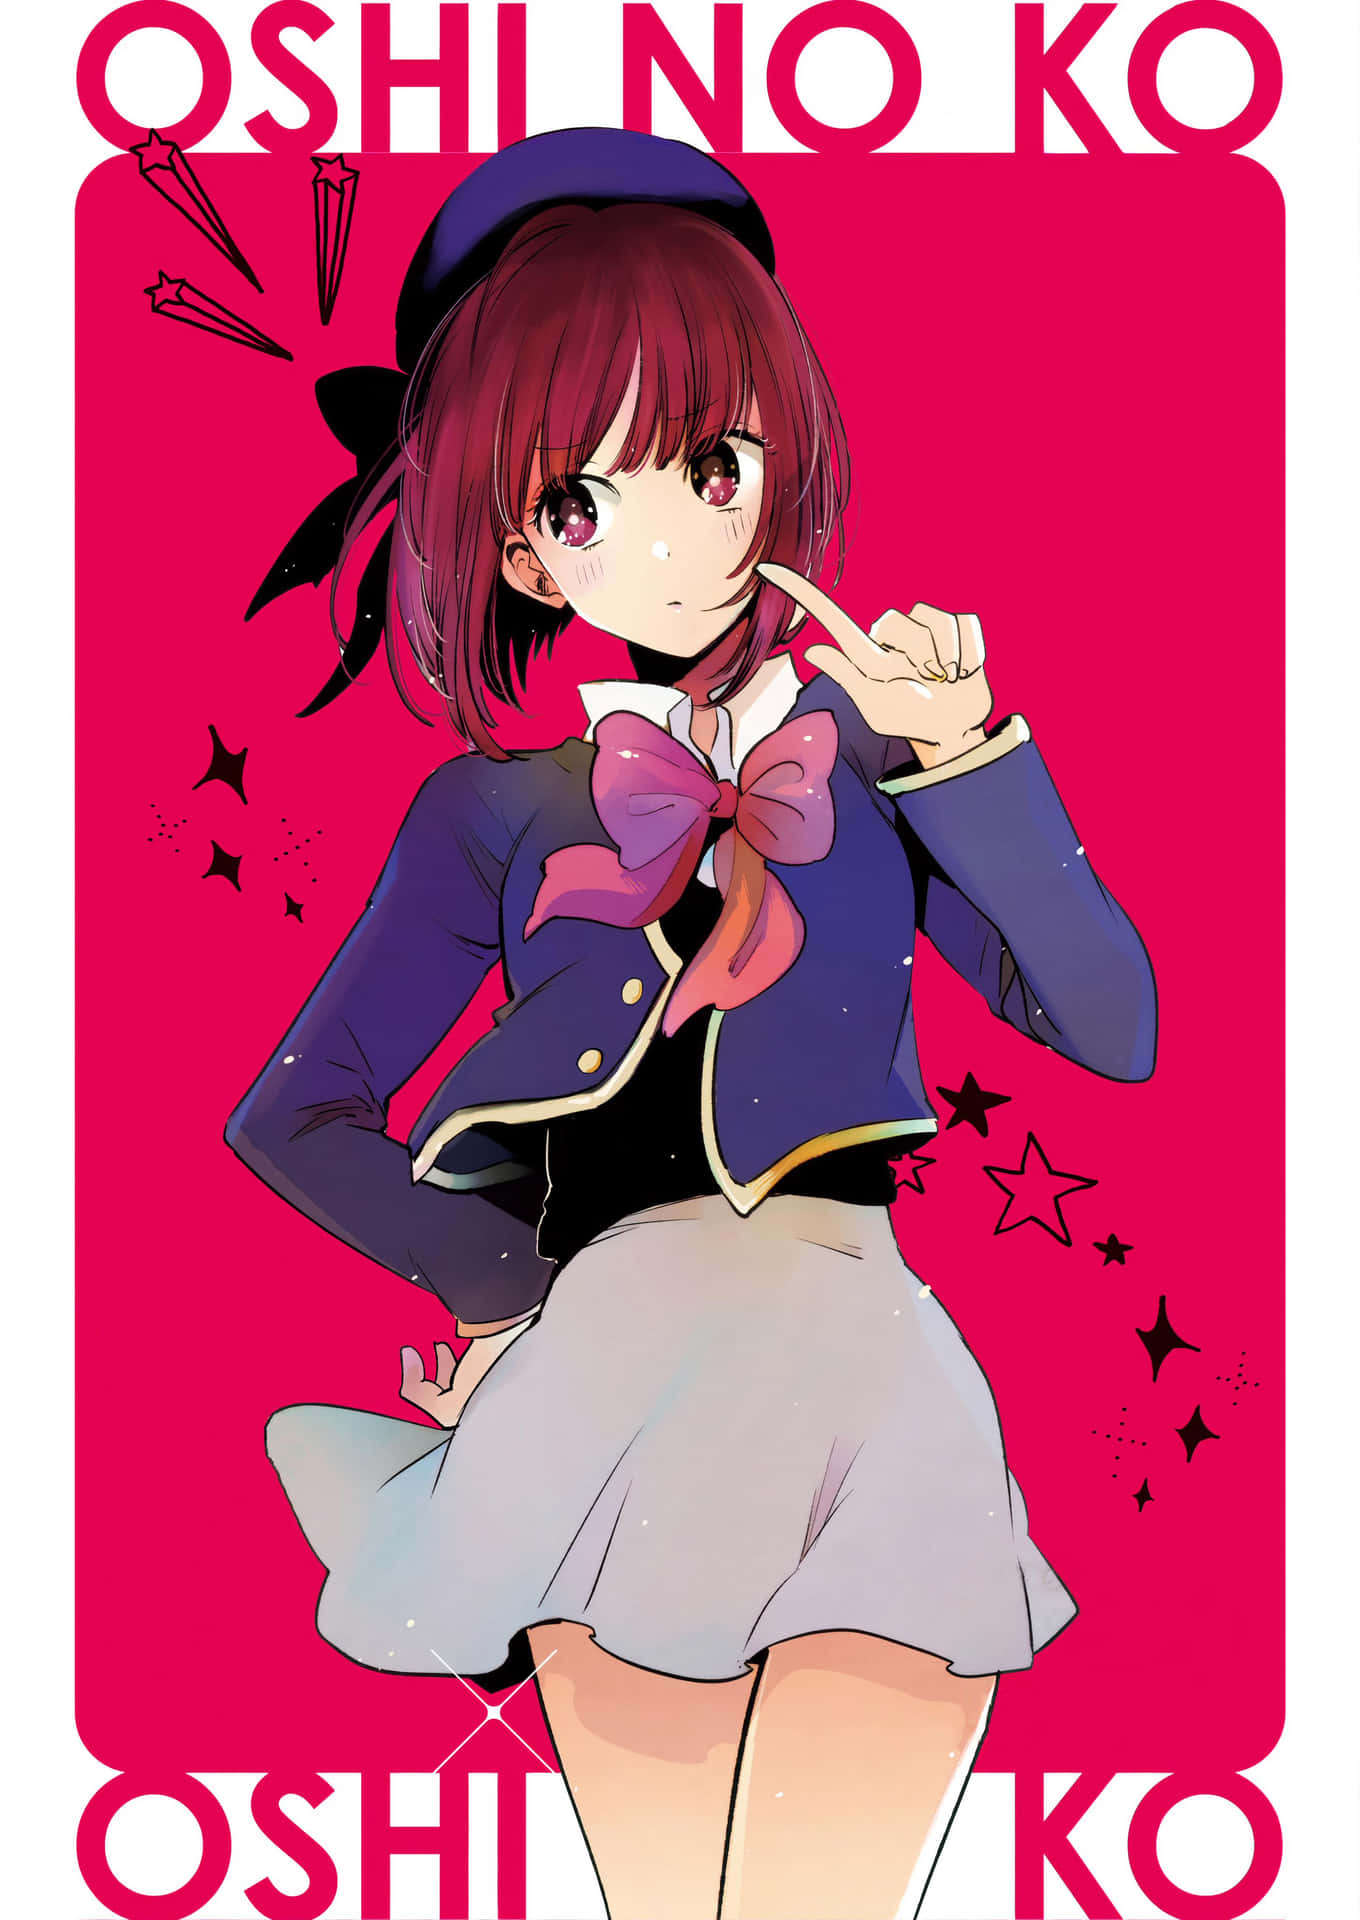 Oshi_ No_ Ko_ Anime_ Character_ Poster Wallpaper